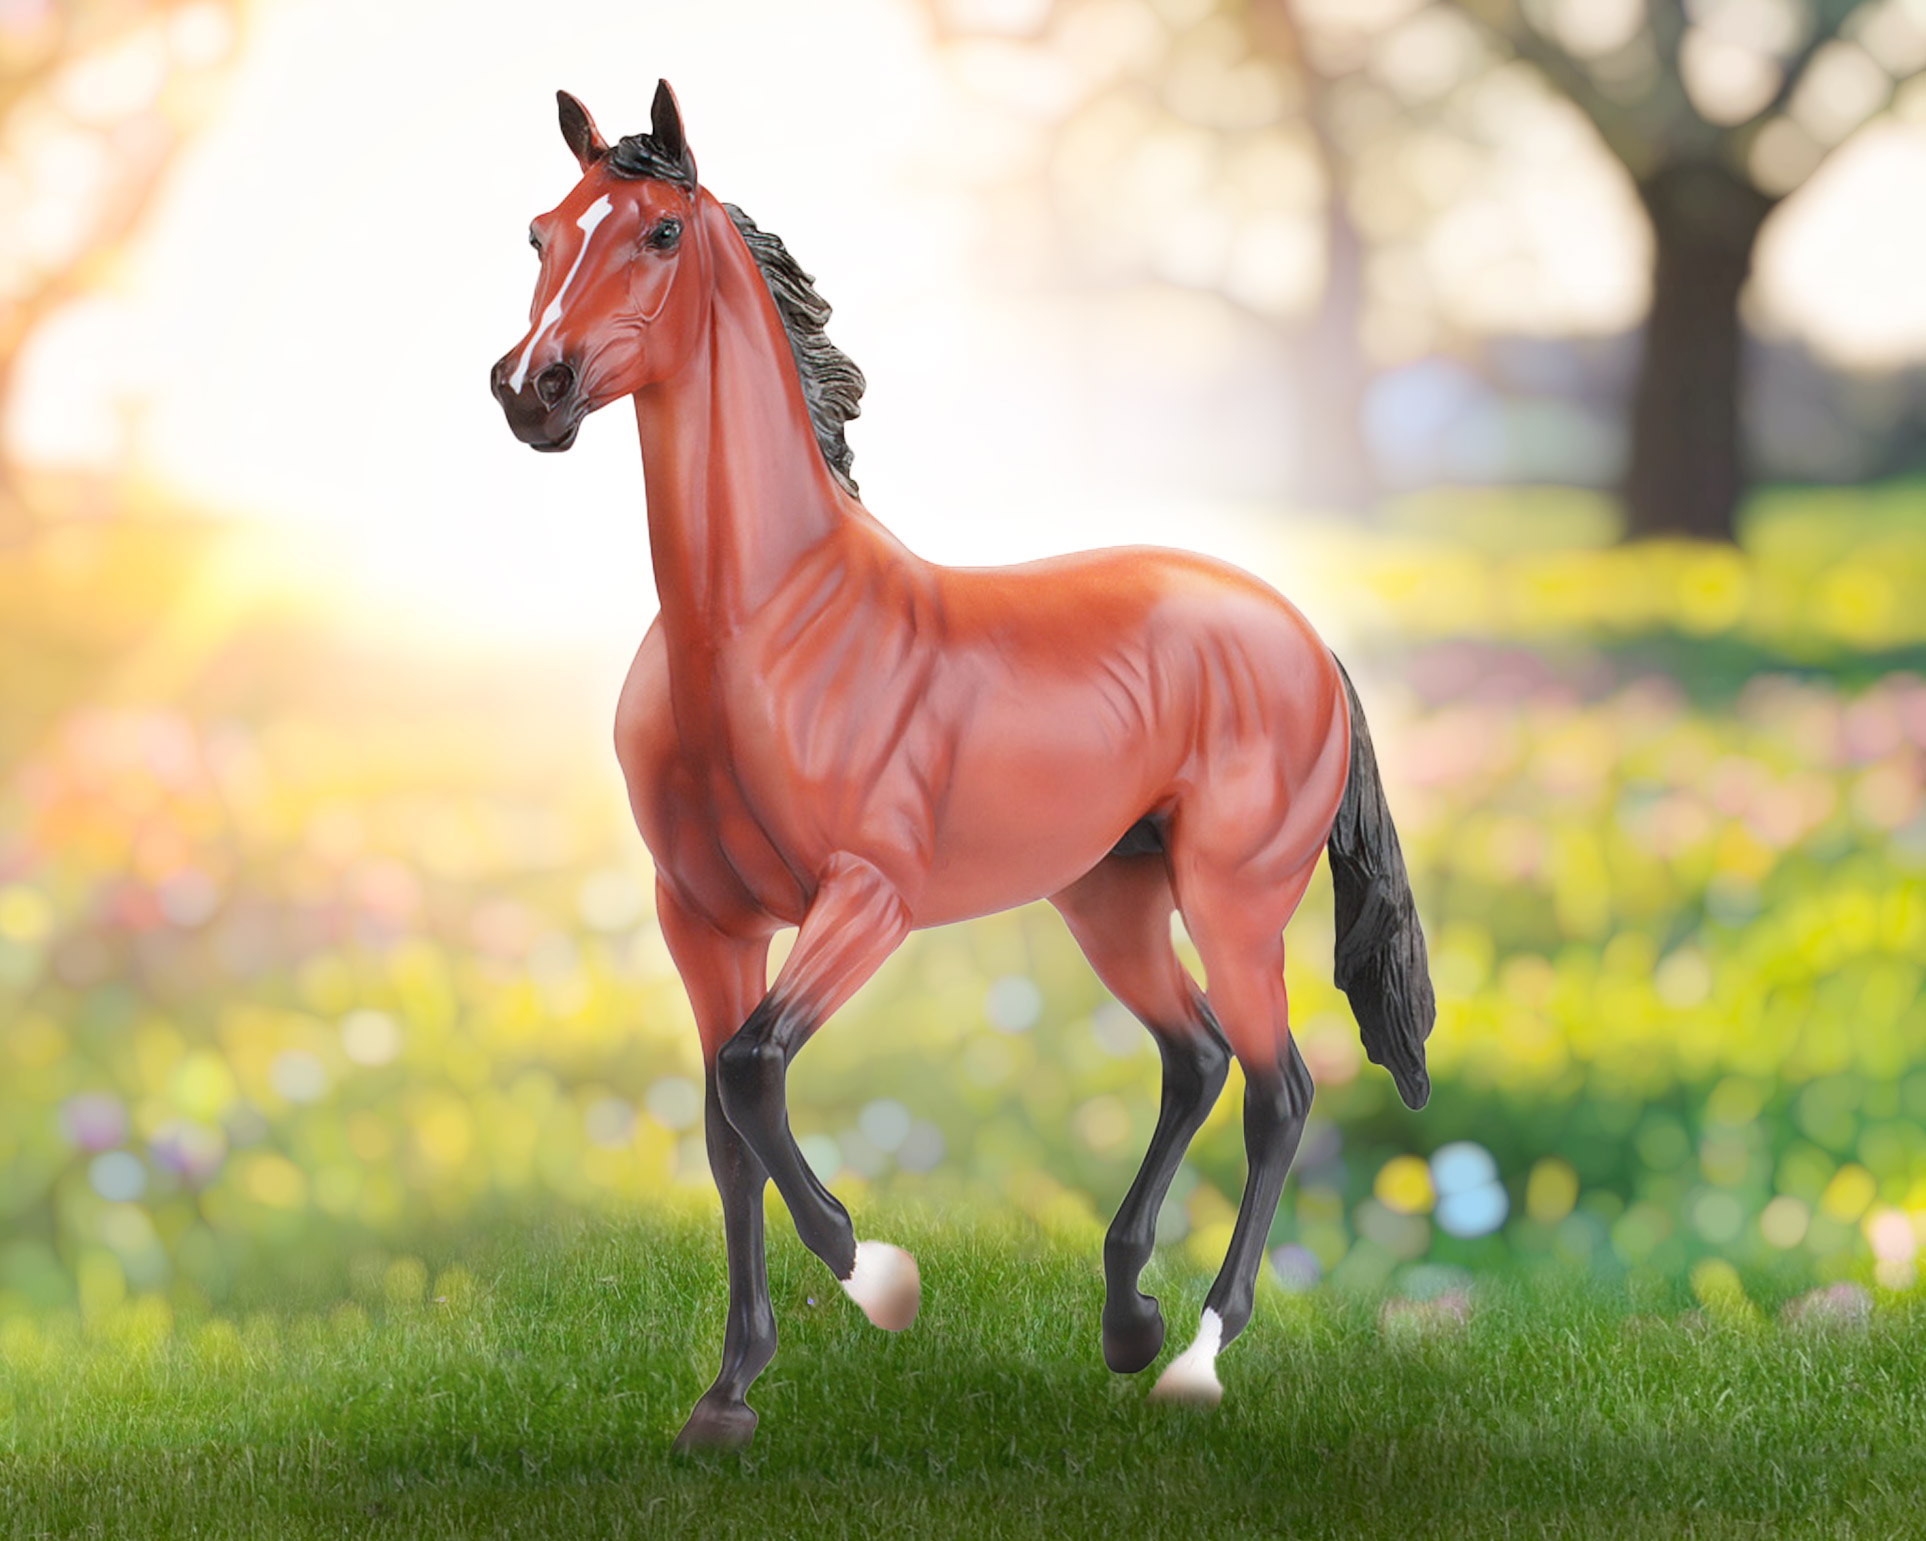 Breyer Model Horse, Afleet Alex